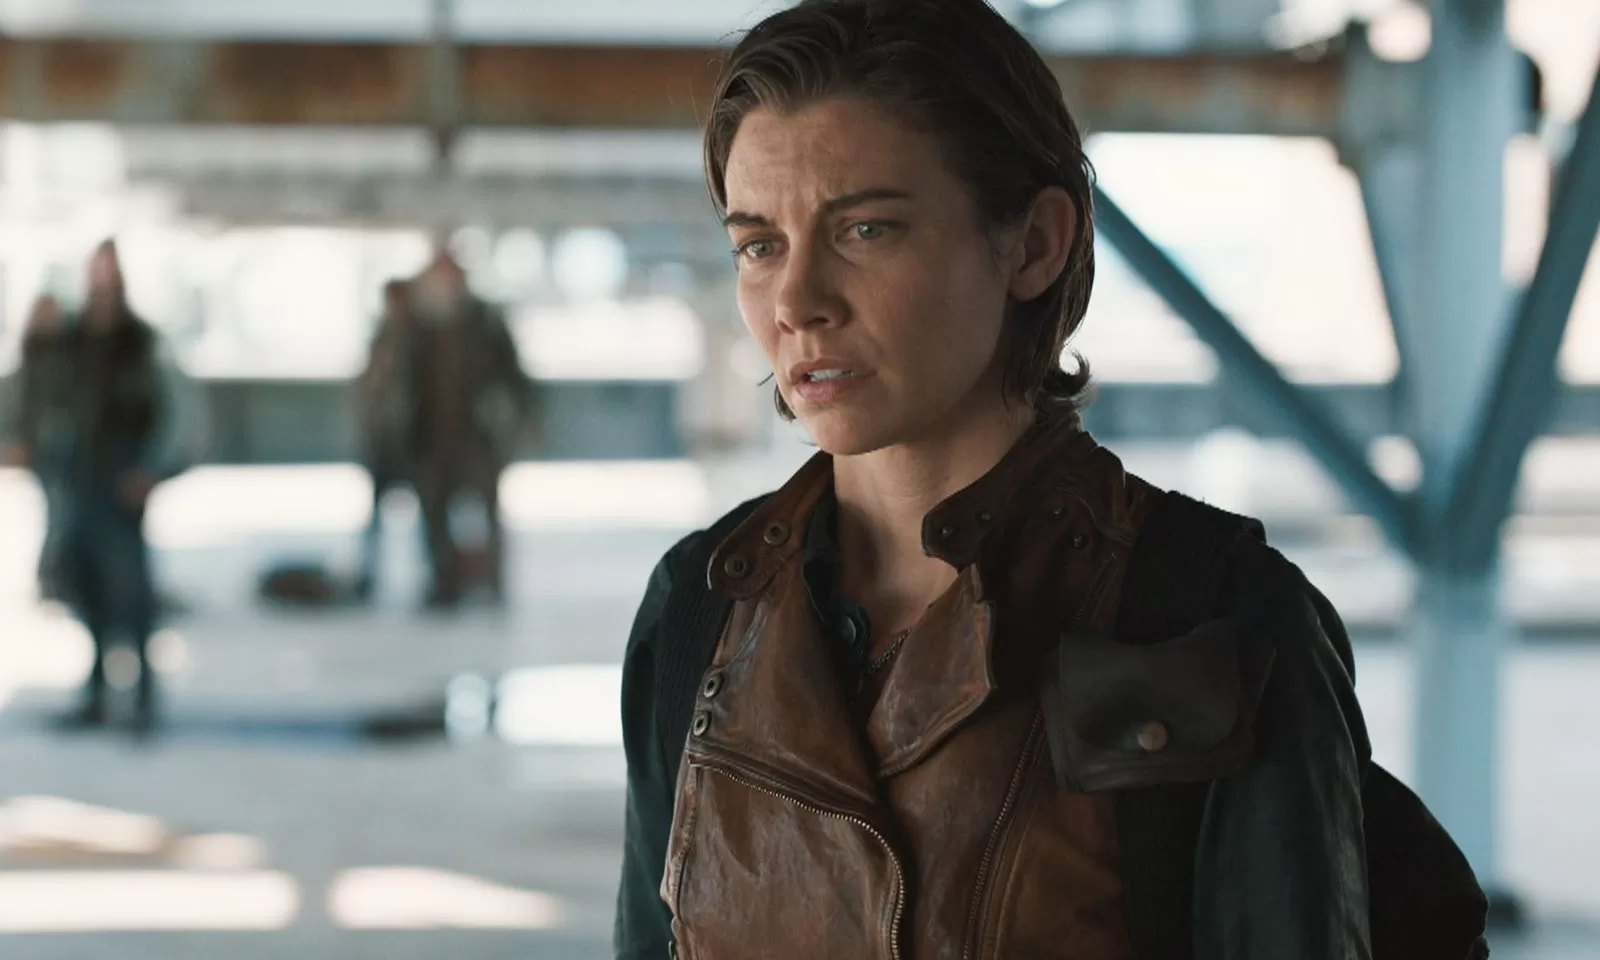 Maggie com os olhos cheios de lágrimas em cena do Episódio 2 da 1ª Temporada de The Walking Dead: Dead City.